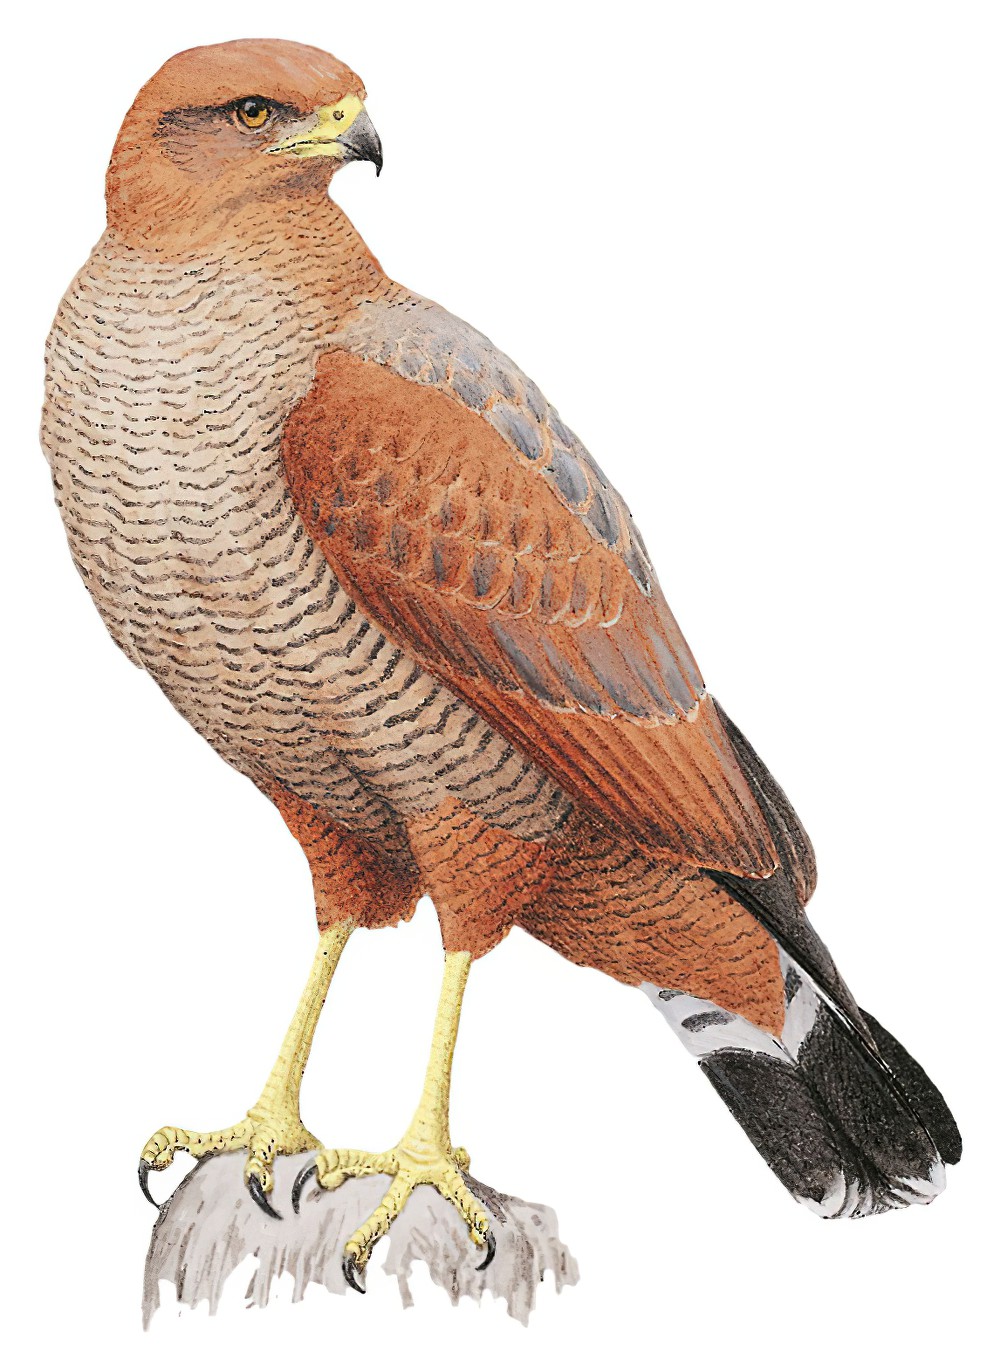 Savanna Hawk / Buteogallus meridionalis